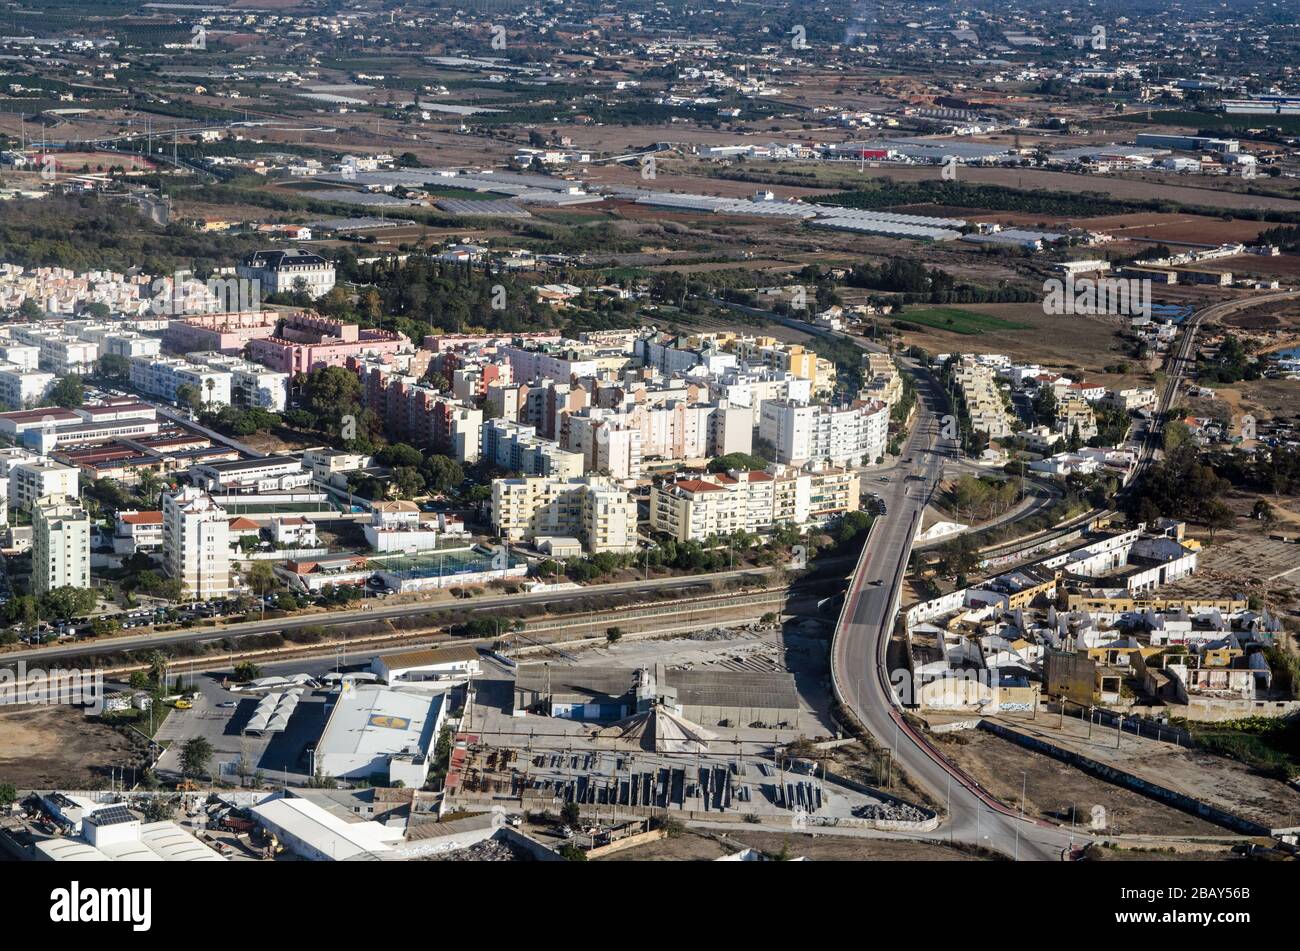 Faro, Portugal - 16. November 2019: Luftbild des Industrie- und Einzelhandelsbezirks Faro an der Algarve-Küste Portugals. Die bauunterstützung Stockfoto